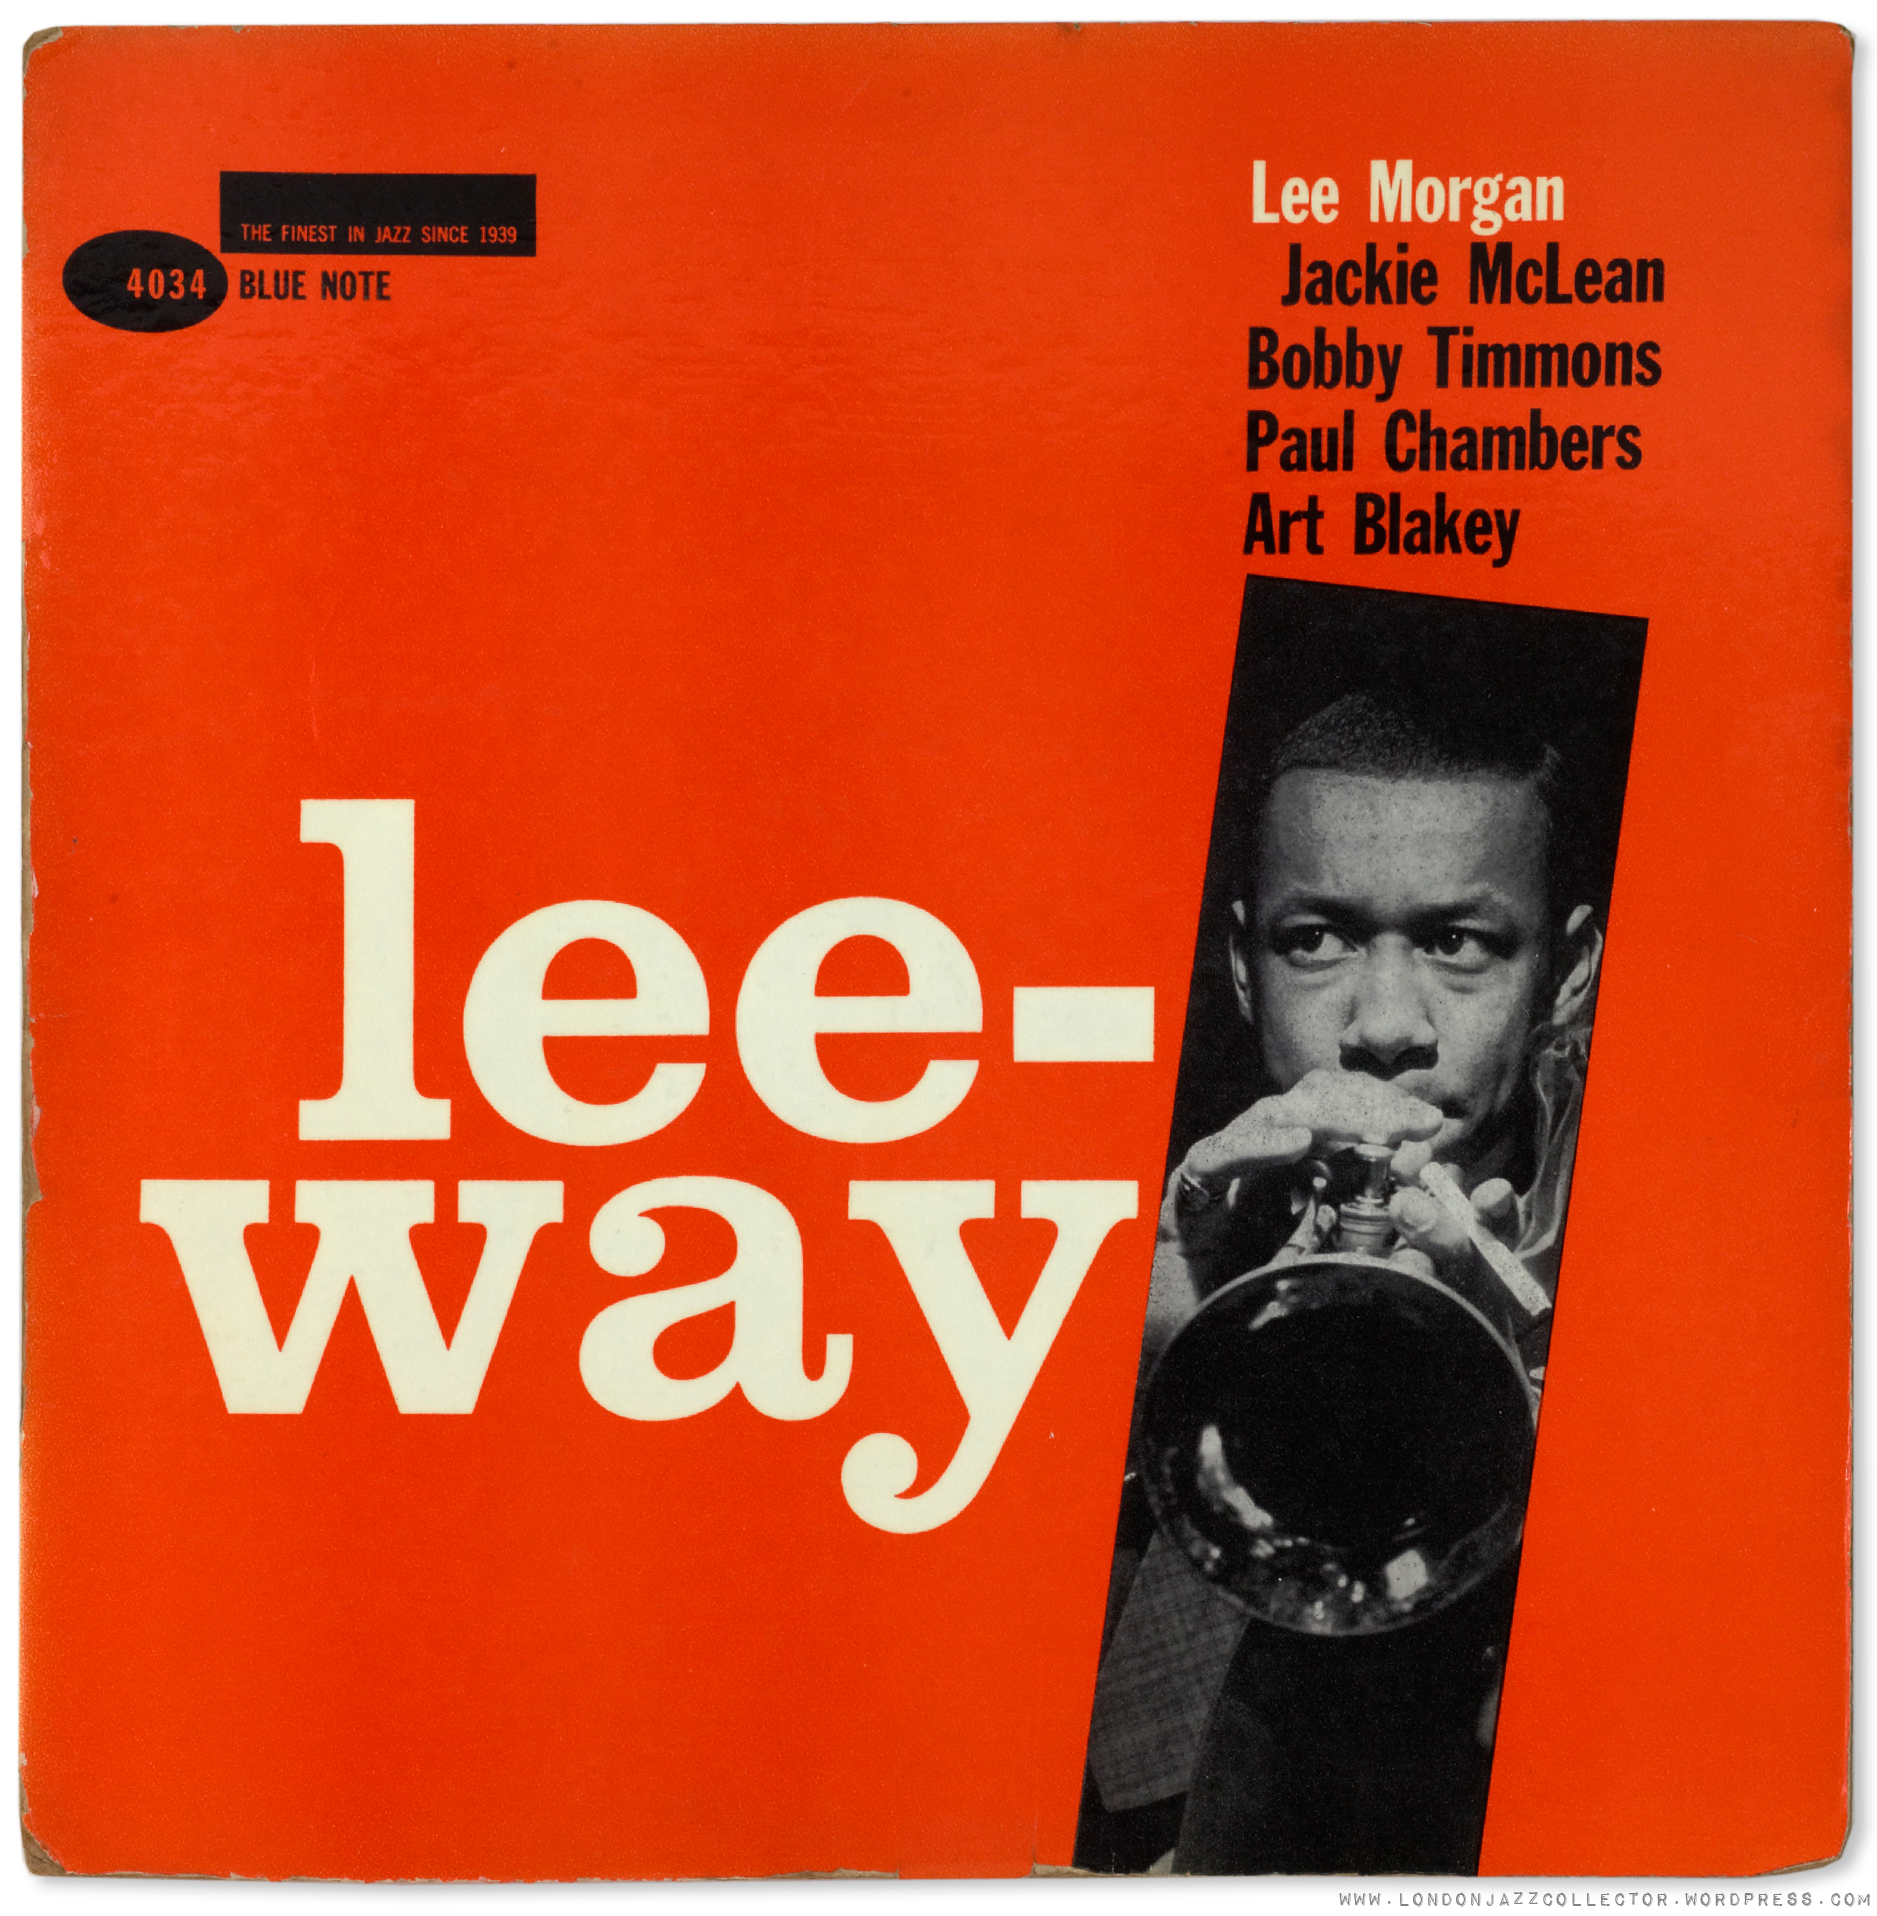 Lee Morgan: Lee-way (1960) Blue Note | LondonJazzCollector